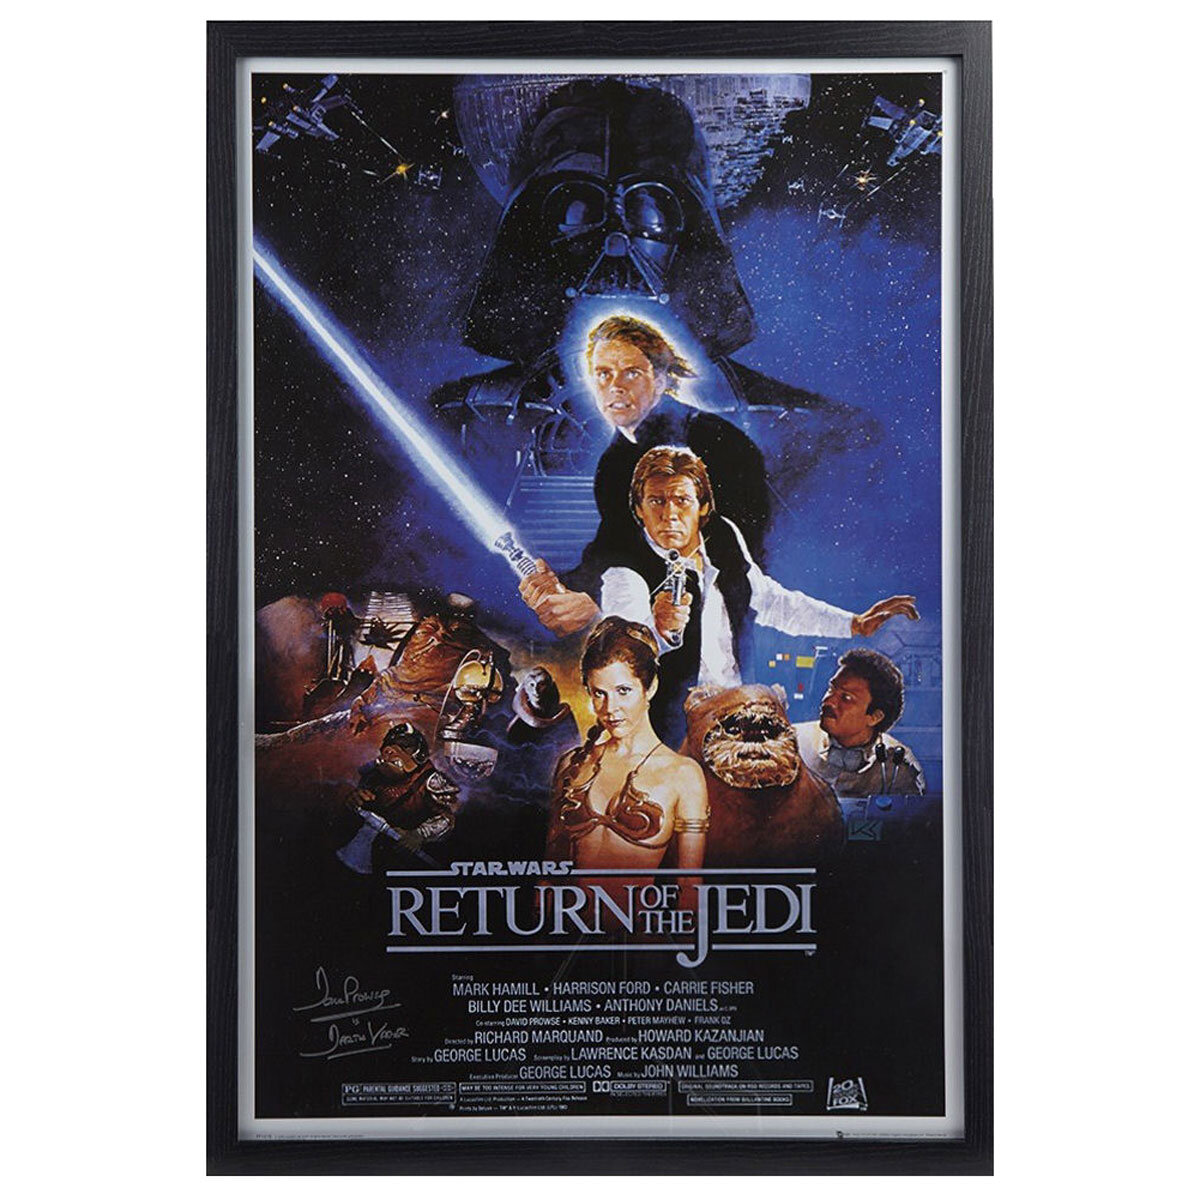 Dave Prowse Signed & Framed Darth Vader Star wars 'Return Of The Jedi' Film Poster